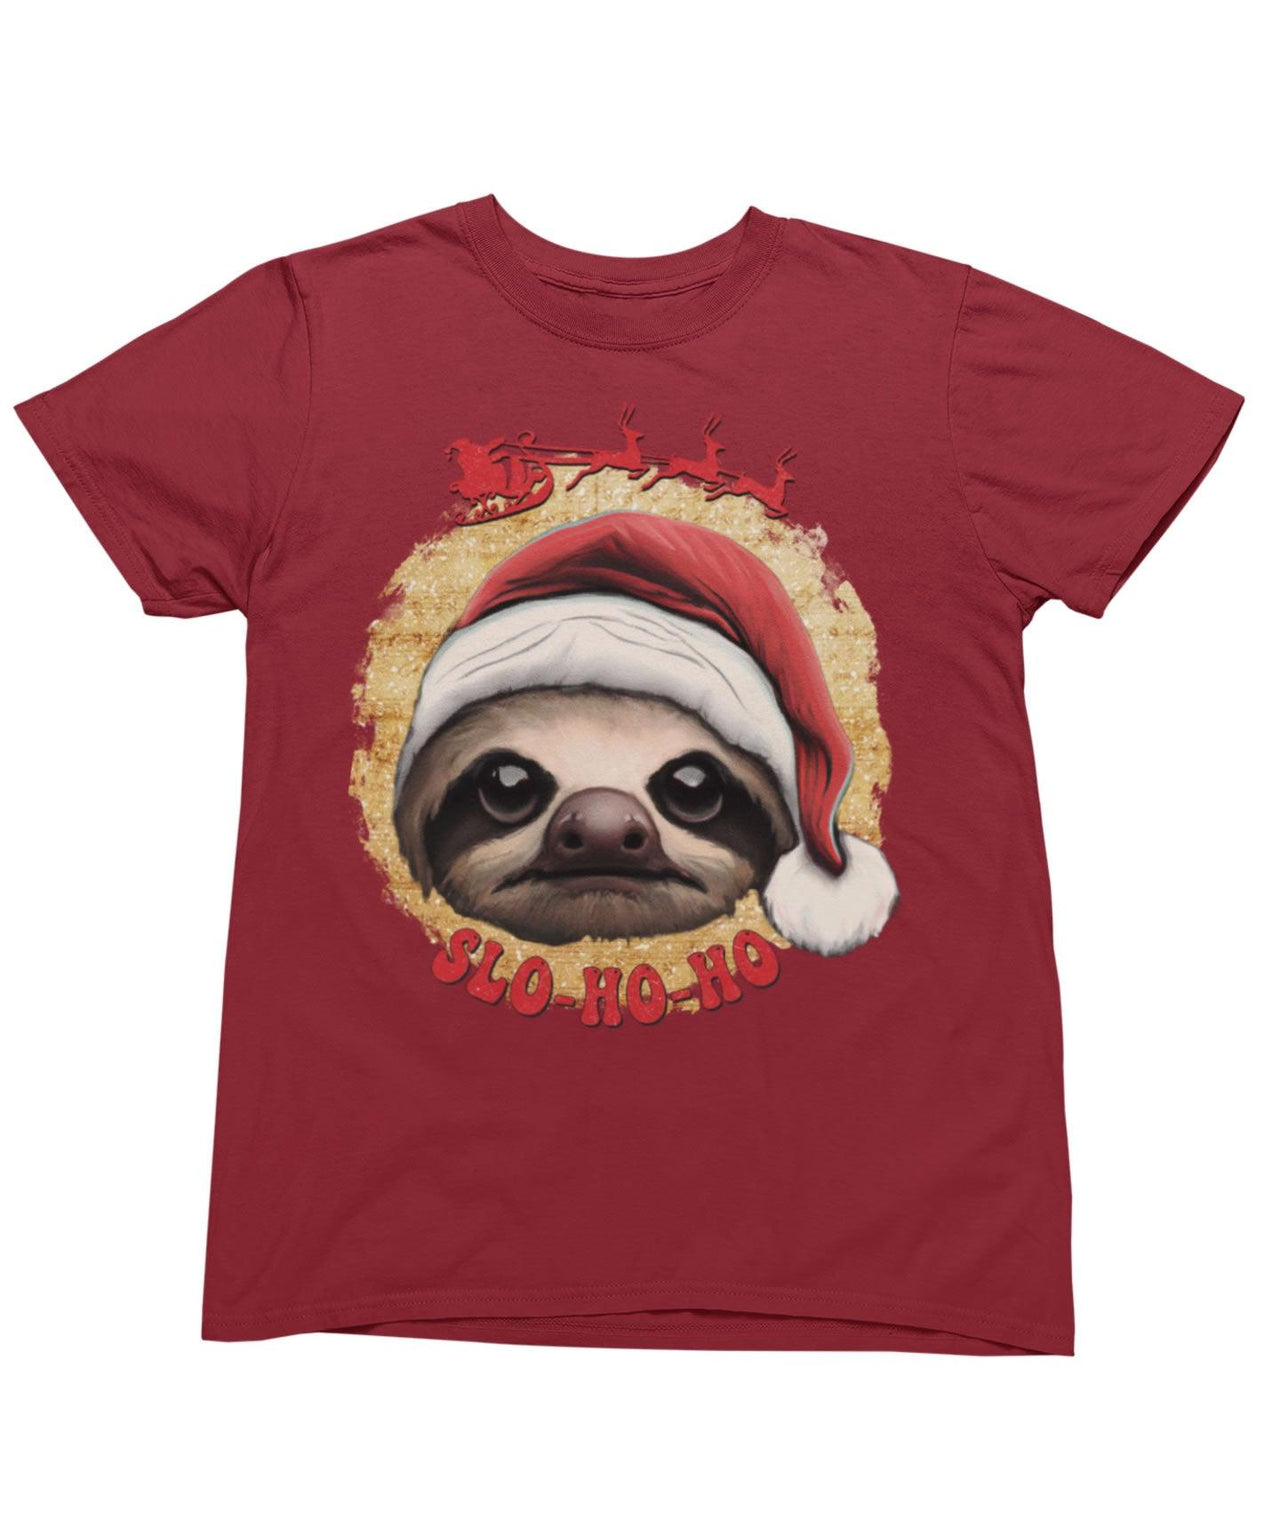 Sloth Ho Ho Ho Christmas Unisex Unisex T-Shirt 8Ball